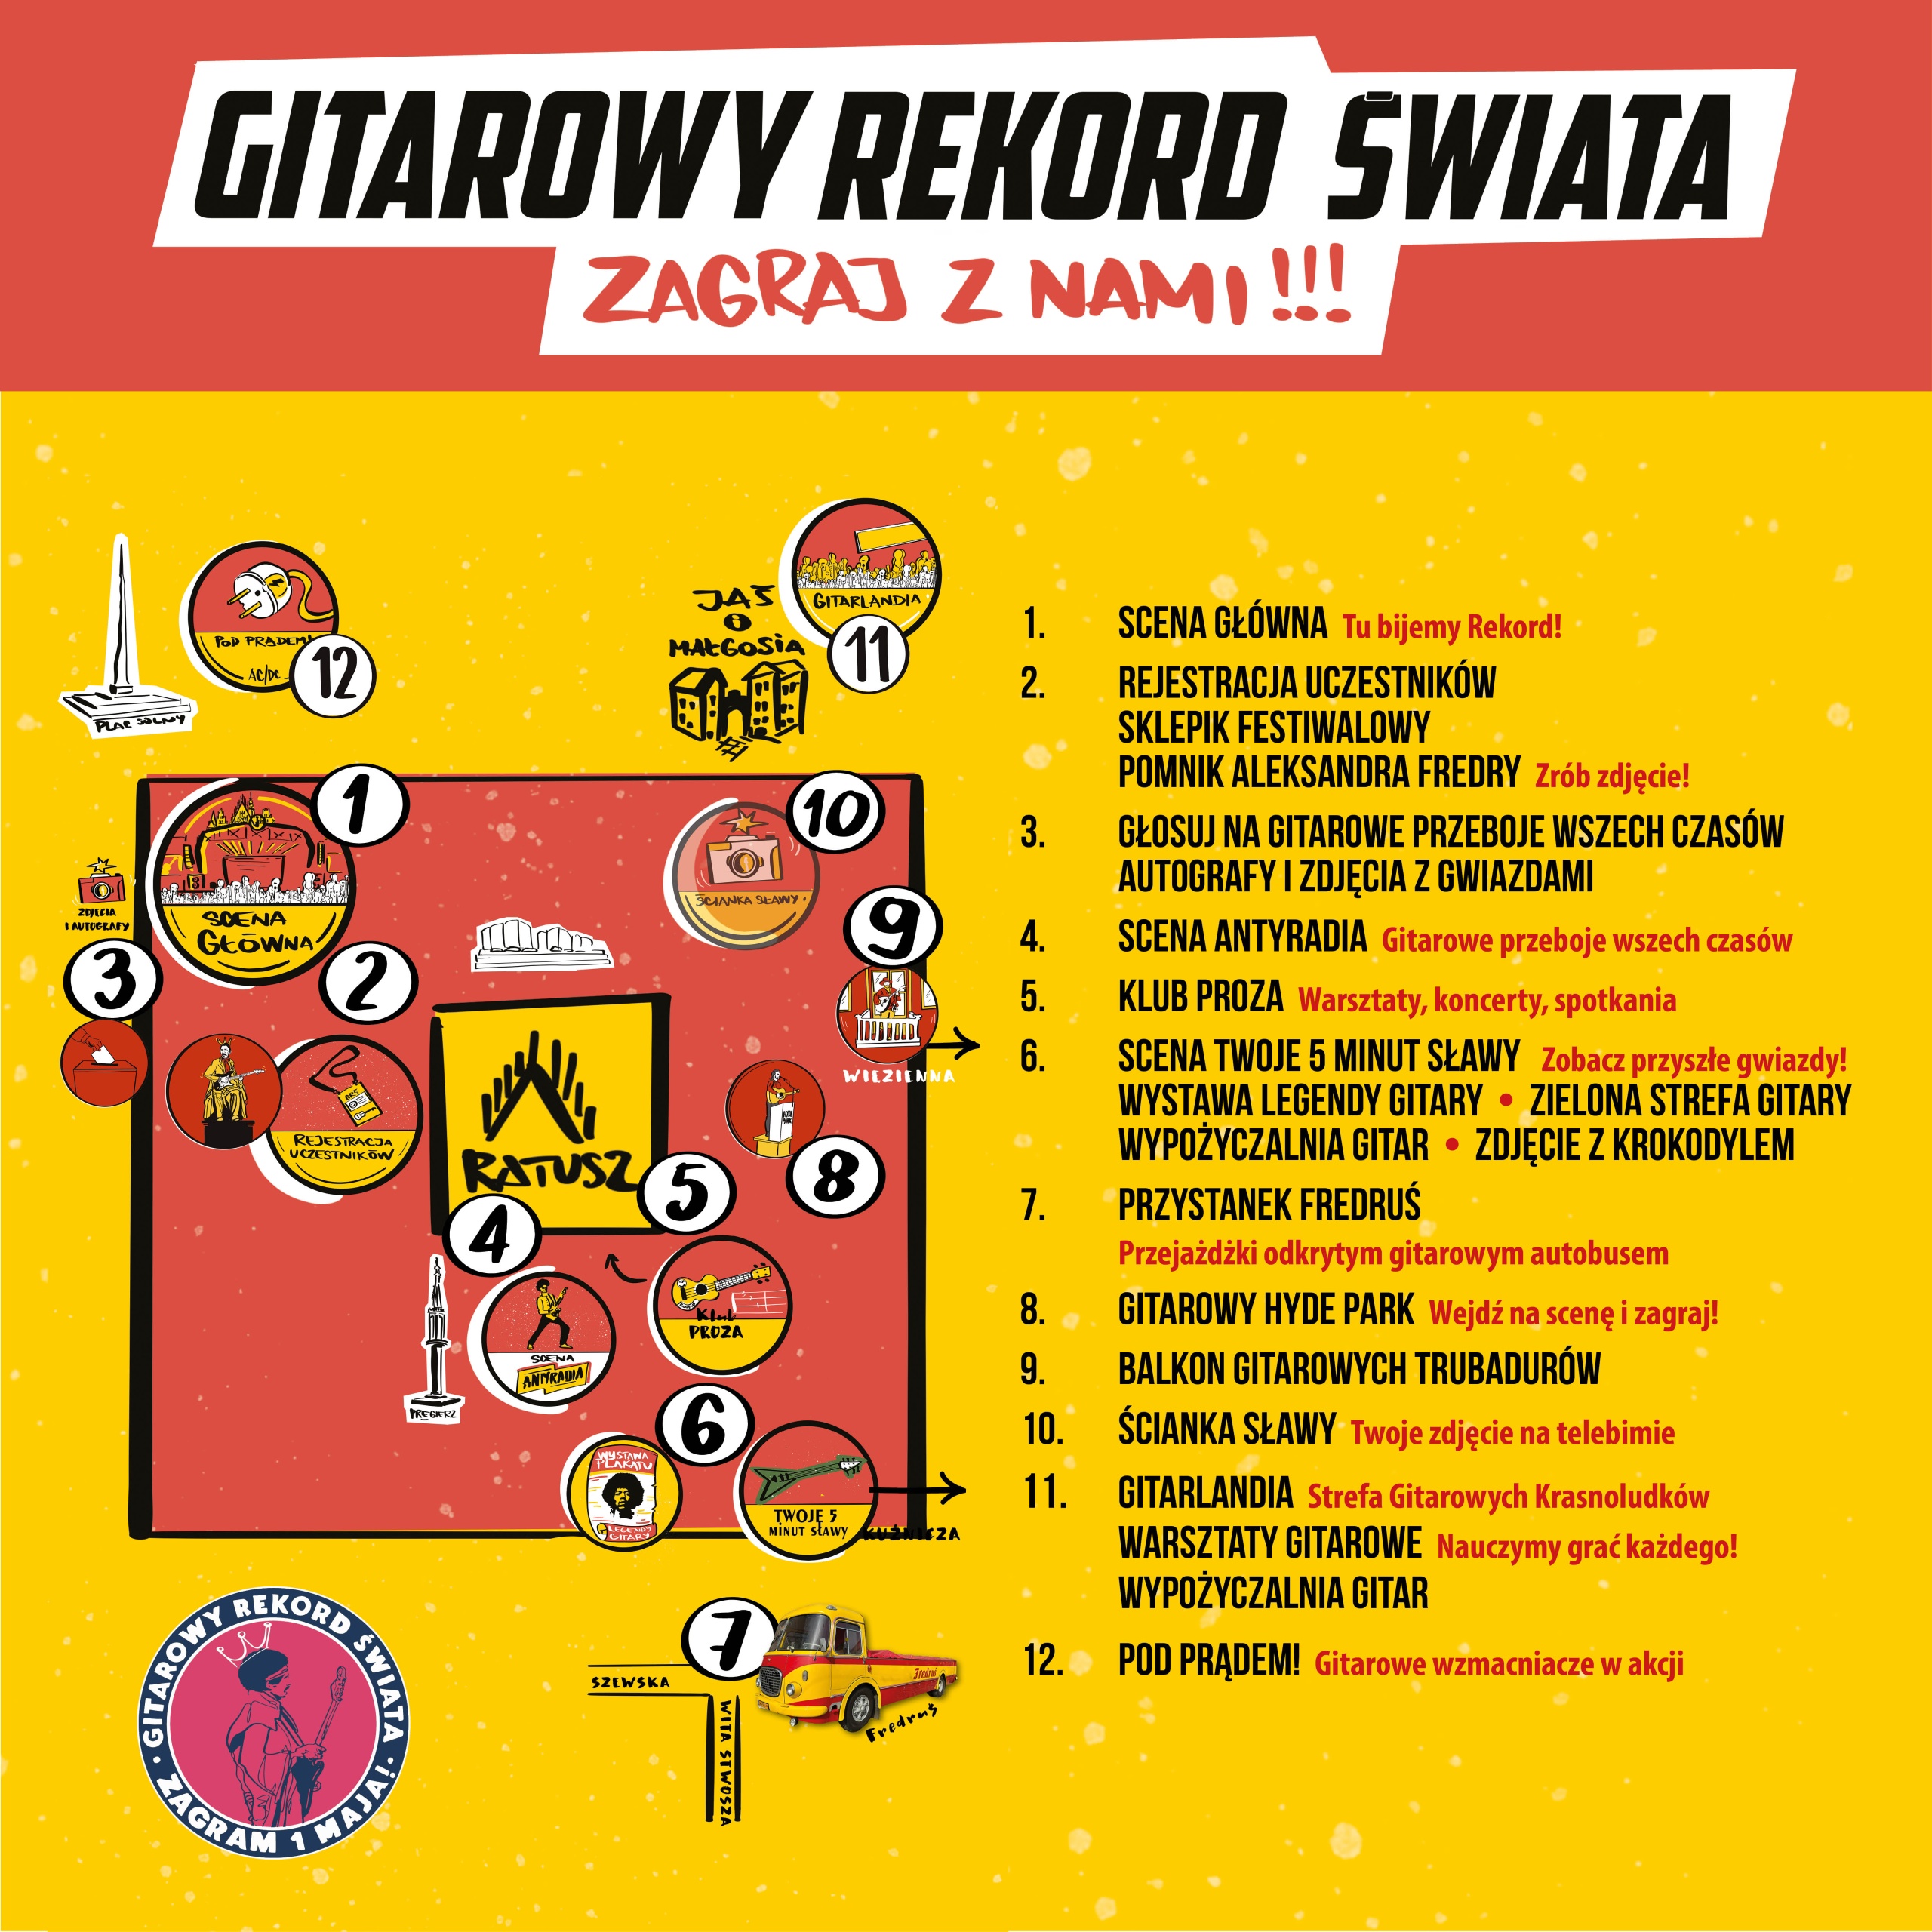 GITAROWY REKORD ŚWIATA we Wrocławiu – ZNAMY JUŻ PROGRAM! post thumbnail image